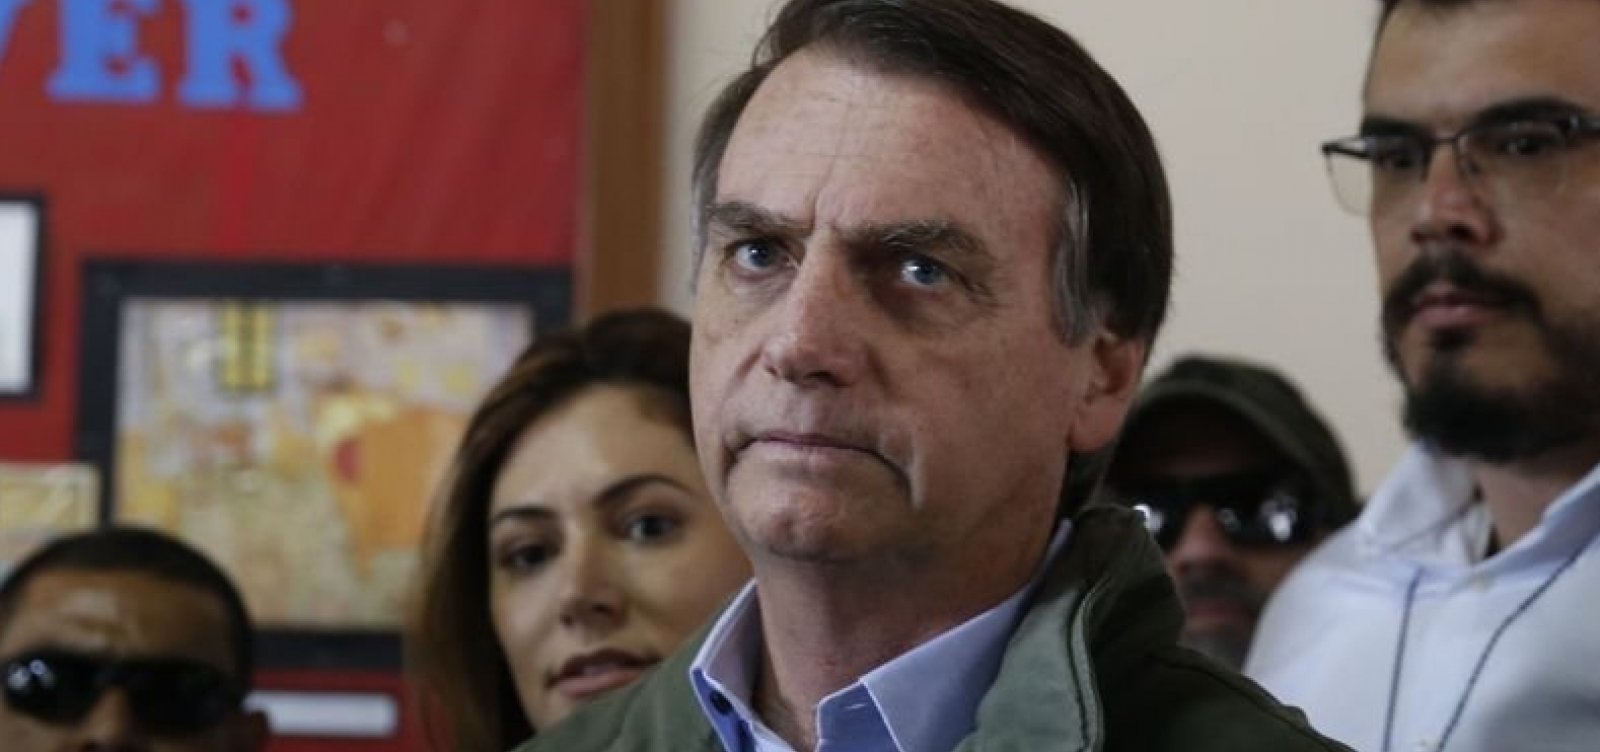 Sócio de empresa ligada a disparos via WhatsApp tem nomeação para equipe de Bolsonaro anulada